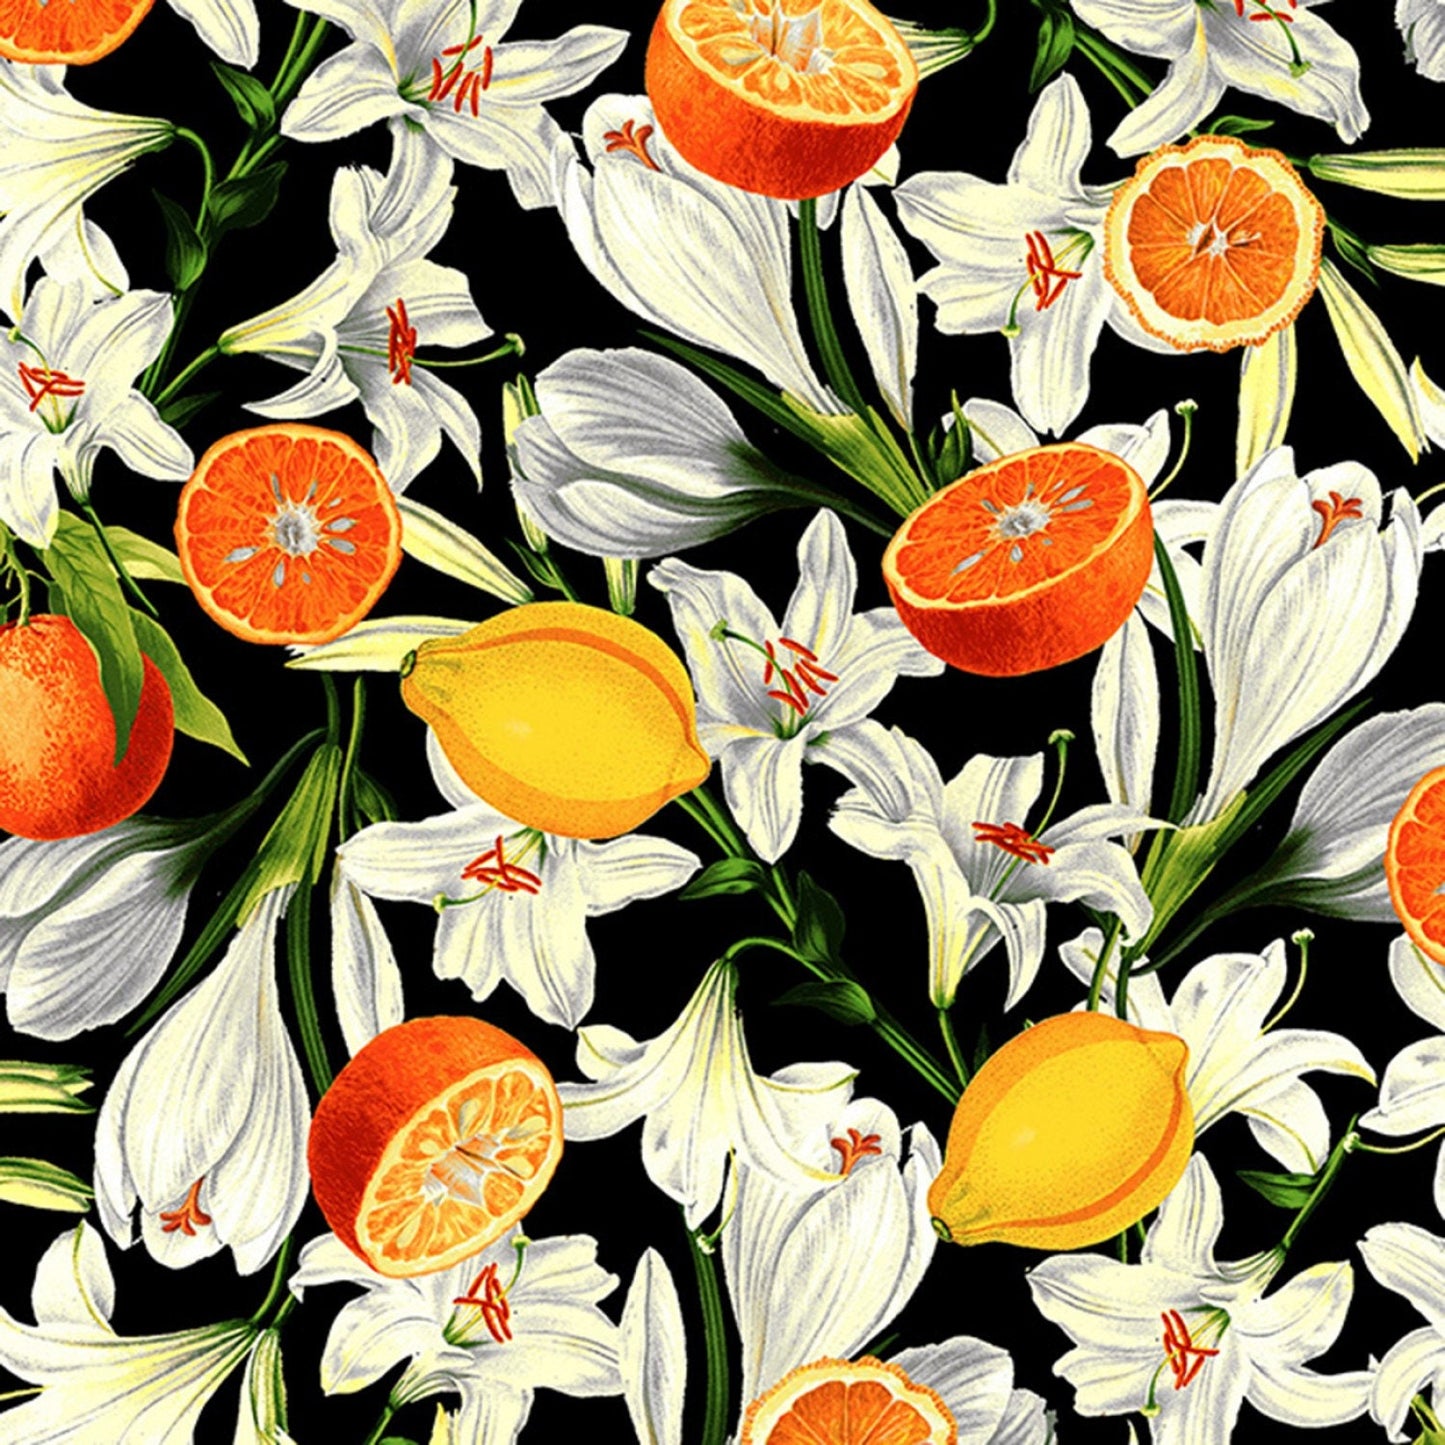 Citrus Garden Lilies with Citrus Black RJ1400JBK2 Cotton Woven Fabric